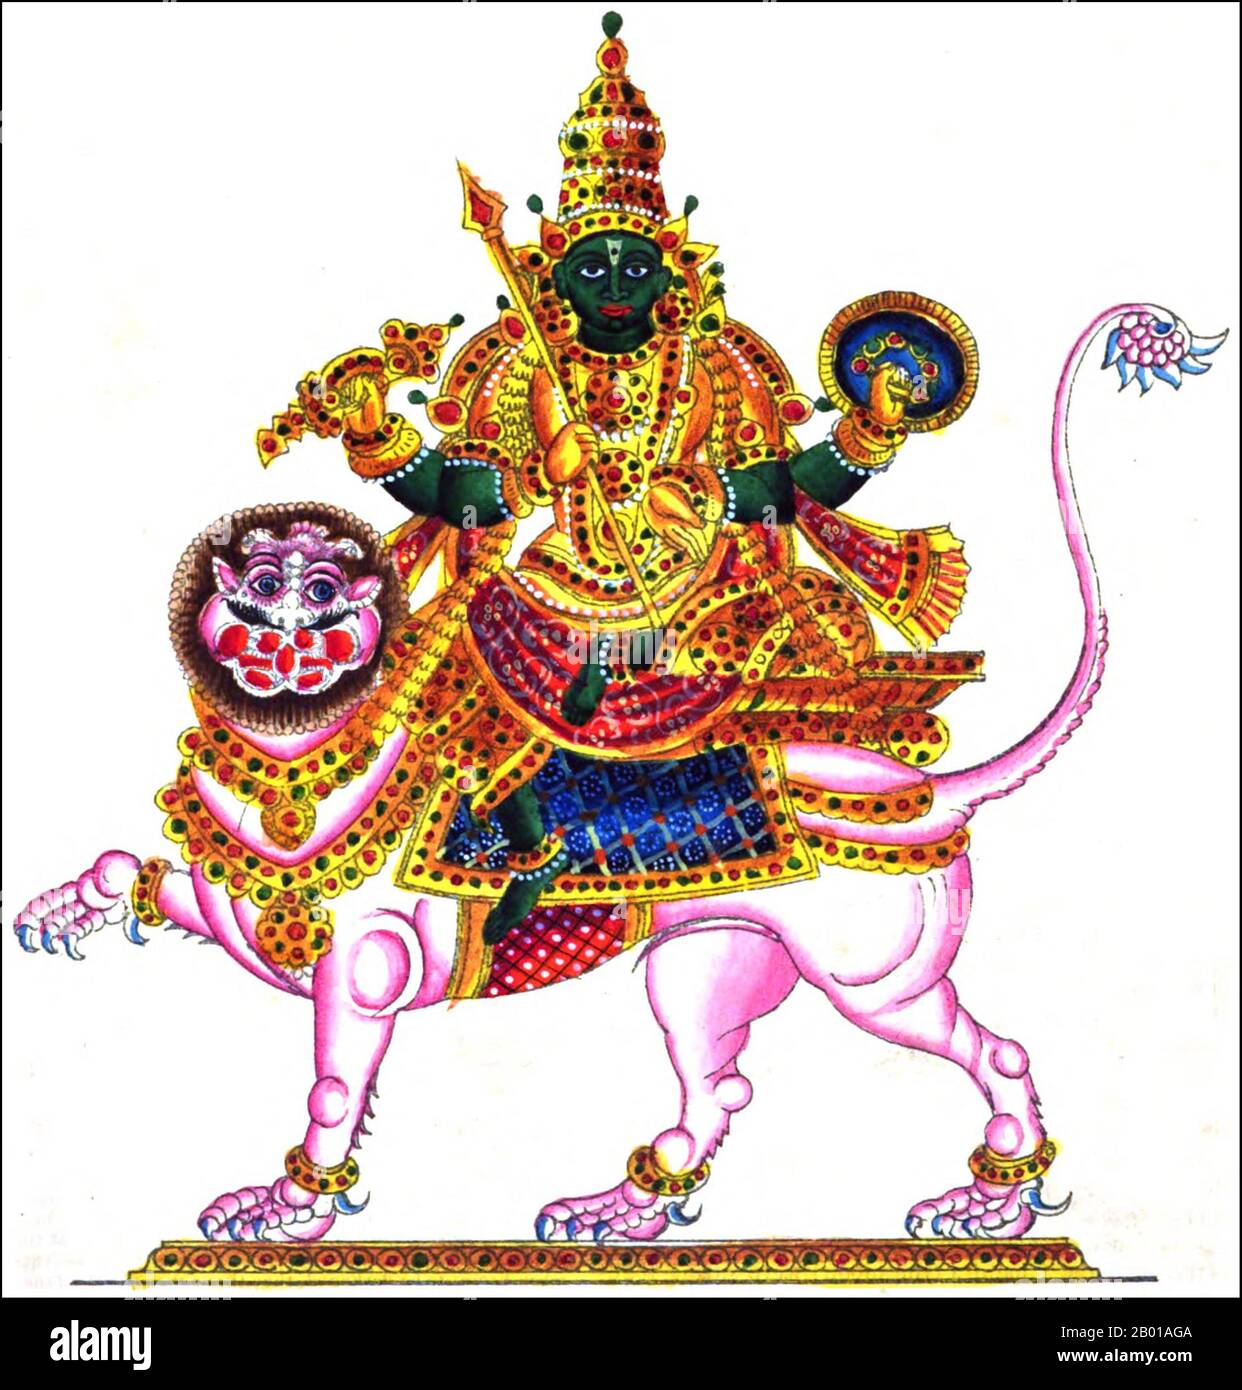 Indien: Eine indische Darstellung von Rahu, Schlangendämon und Verursacher von Sonnen- und Mondfinsternissen, 1842. In der hinduistischen Mythologie ist Rahu eine Schlange, die die Sonne oder den Mond verschlingt und Finsternisse verursacht. Er wird in der Kunst als ein Drache dargestellt, der ohne Körper auf einem von acht schwarzen Pferden gezogenen Wagen reitet. Rahu ist einer der Navagrahas (neun Planeten) in der vedischen Astrologie. Die Rahu Kala (Tageszeit unter dem Einfluss von Rahu) gilt als ungünstig. Stockfoto